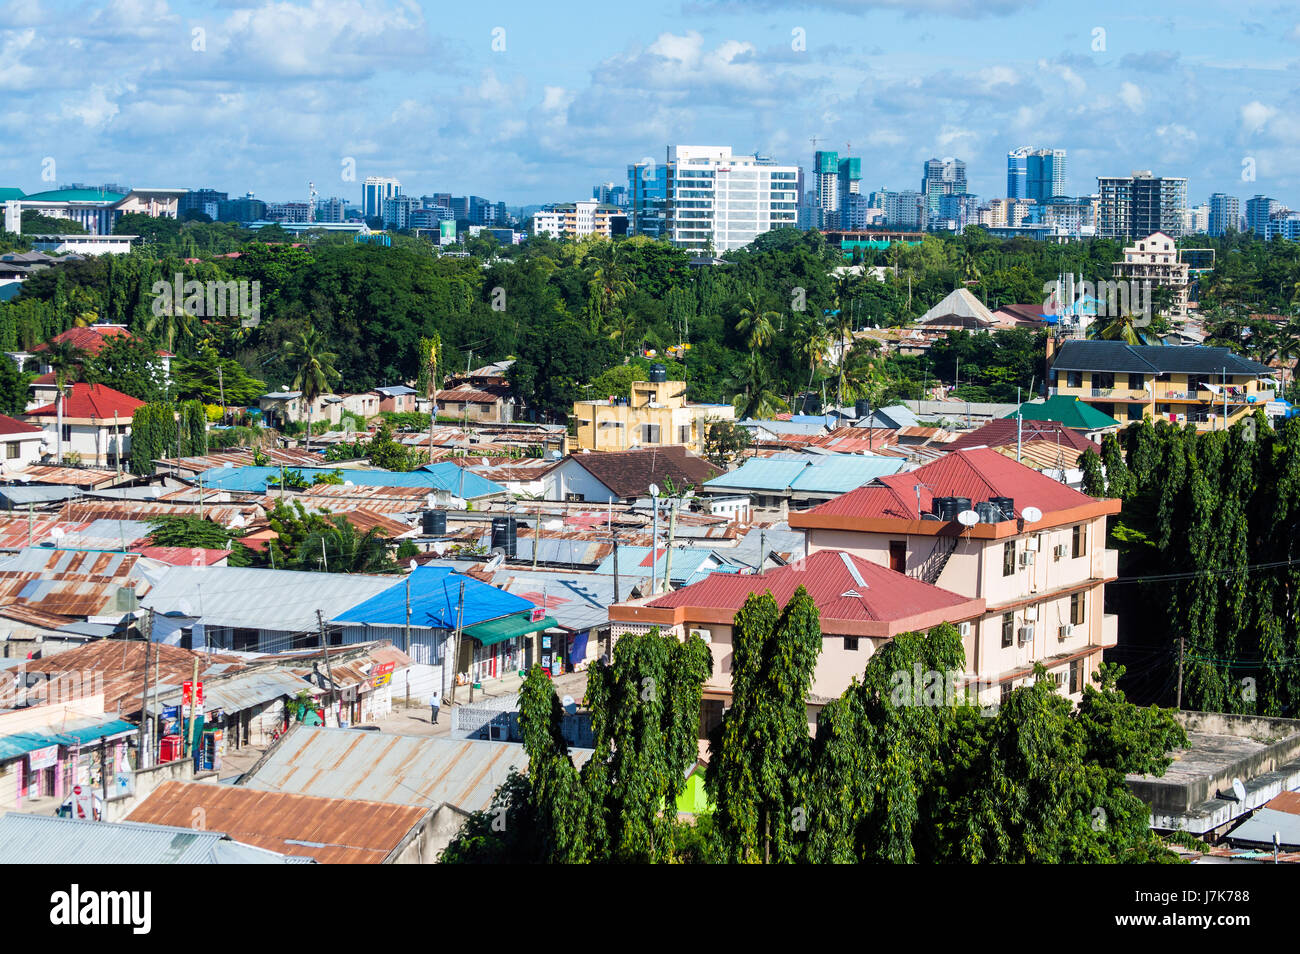 Vista aérea mirando al sureste del centro de la ciudad de Namanga cerca de Oyster Bay, Dar es Salaam, Tanzania Foto de stock